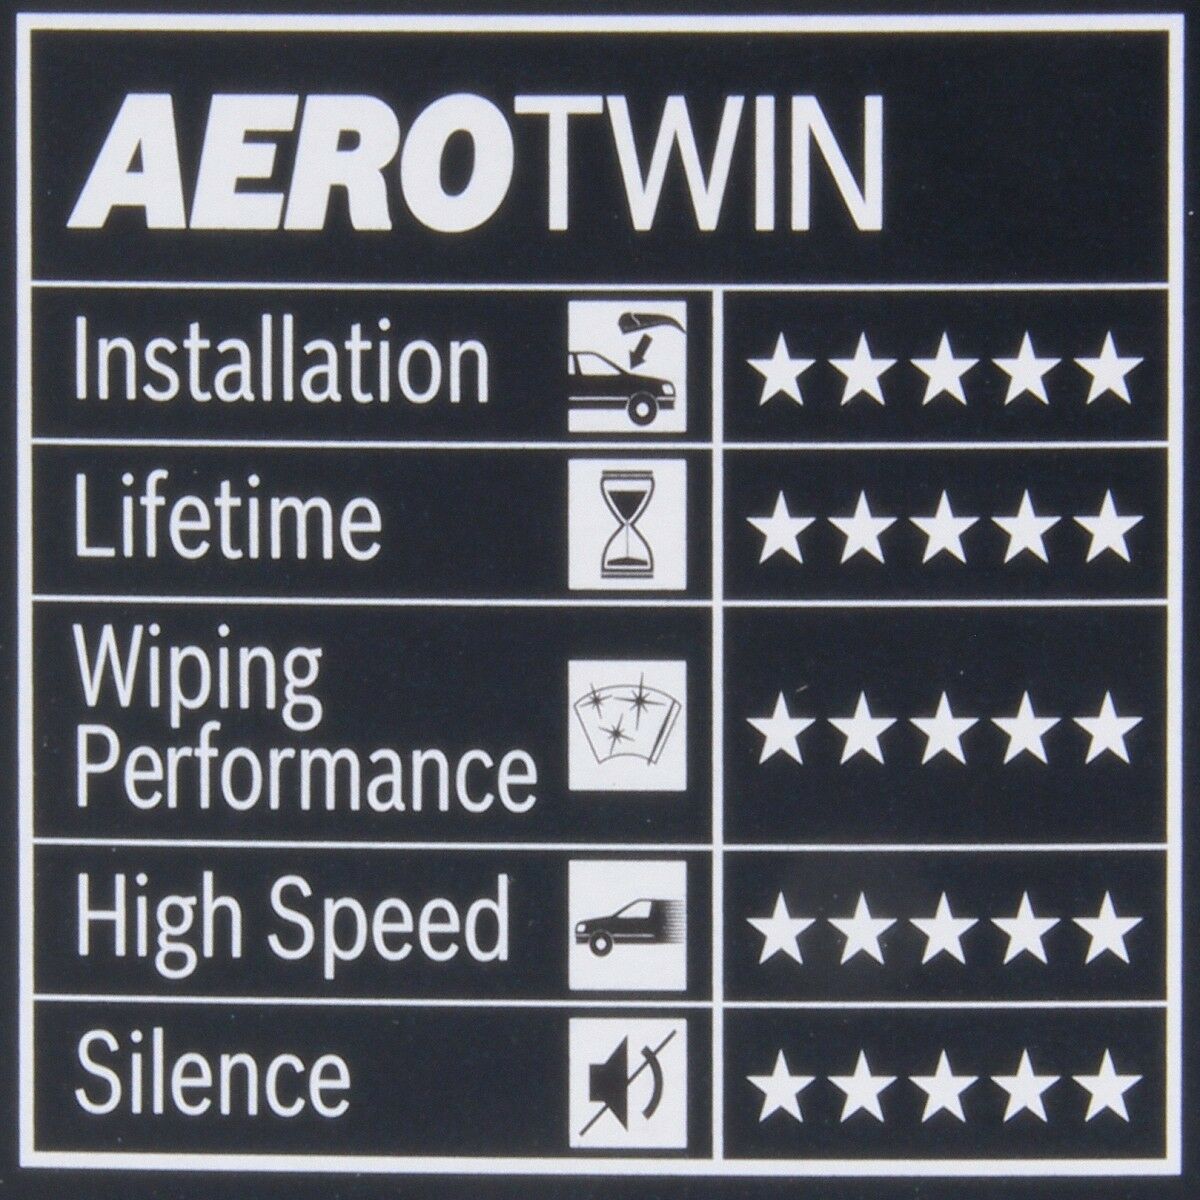 Bosch AeroTwin AR532S Wischblatt 530mm 500mm Scheibenwischer 3397118986 Satz Set